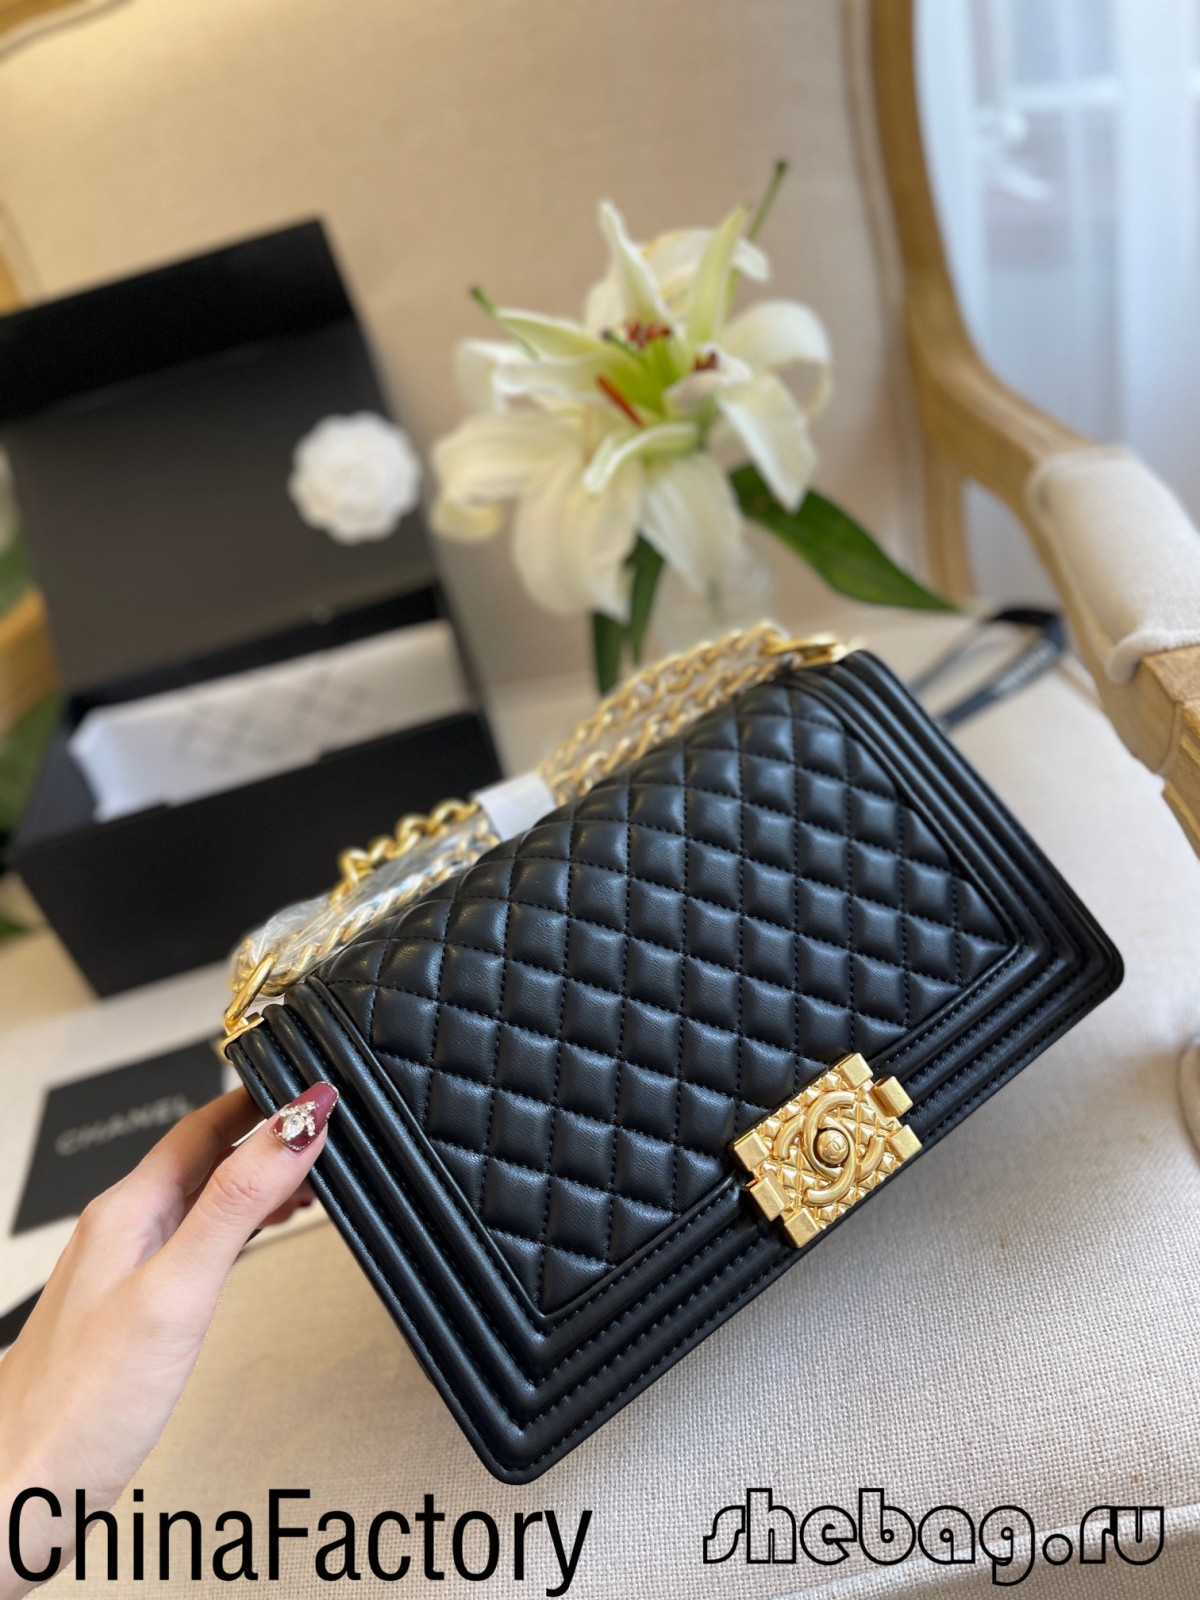 Labākās kvalitātes 2.55 Chanel somas reprodukcijas avoti Ķīnā (atjaunināts 2022. gadā) — labākās kvalitātes viltotu Louis Vuitton somu tiešsaistes veikals, dizaineru somas kopija ru